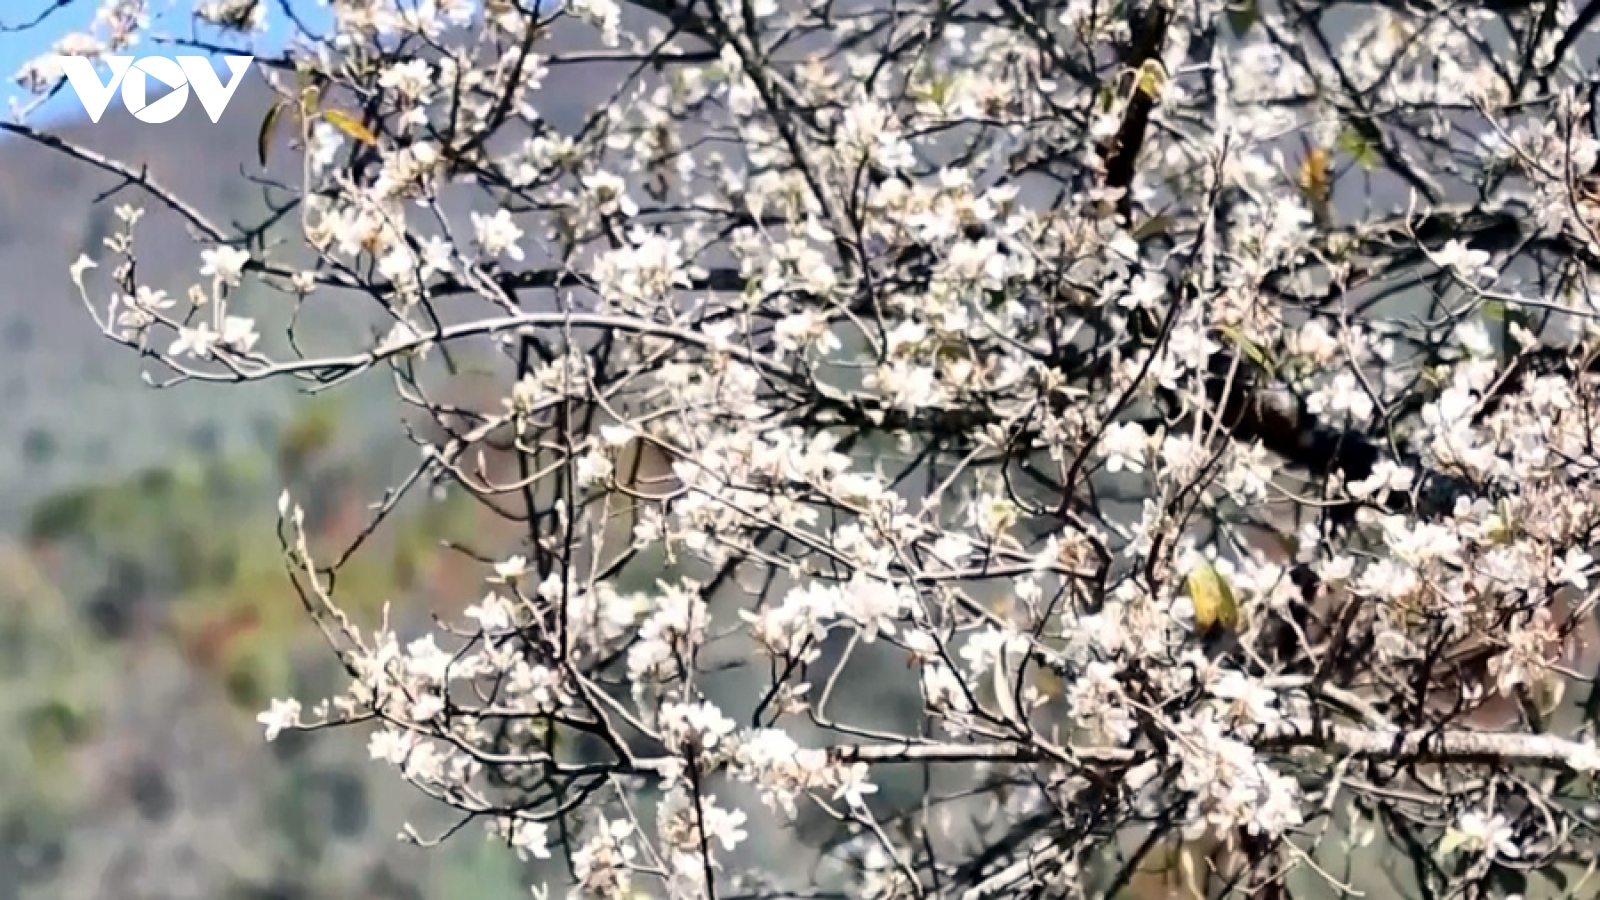 “Sơn tra – Mùa hoa gọi” trên miền cổ tích của núi rừng Tây Bắc